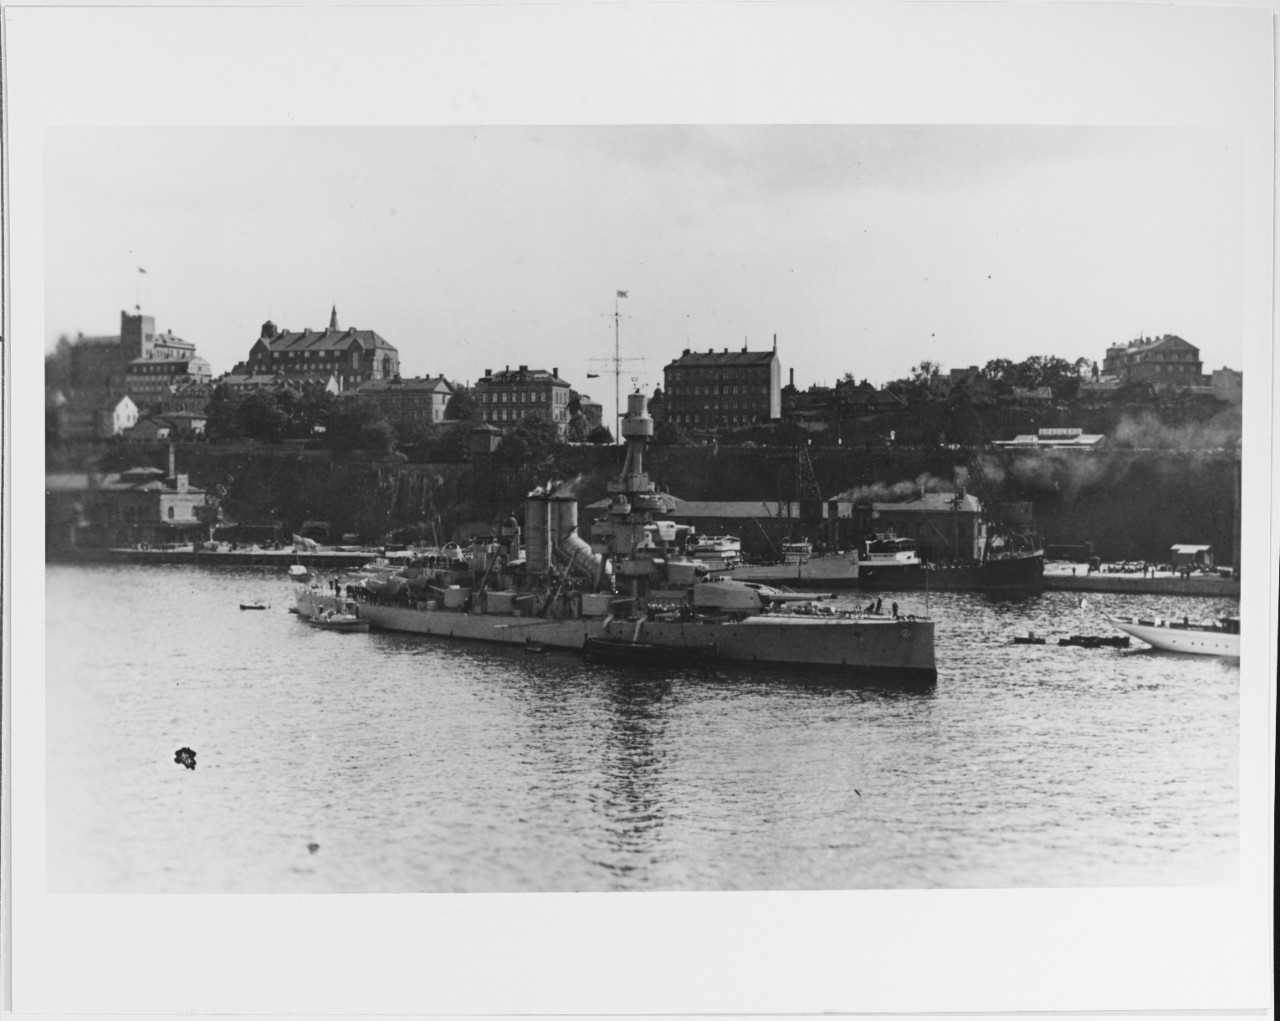 SVERIGE (Swedish coast defense ship, 1915)